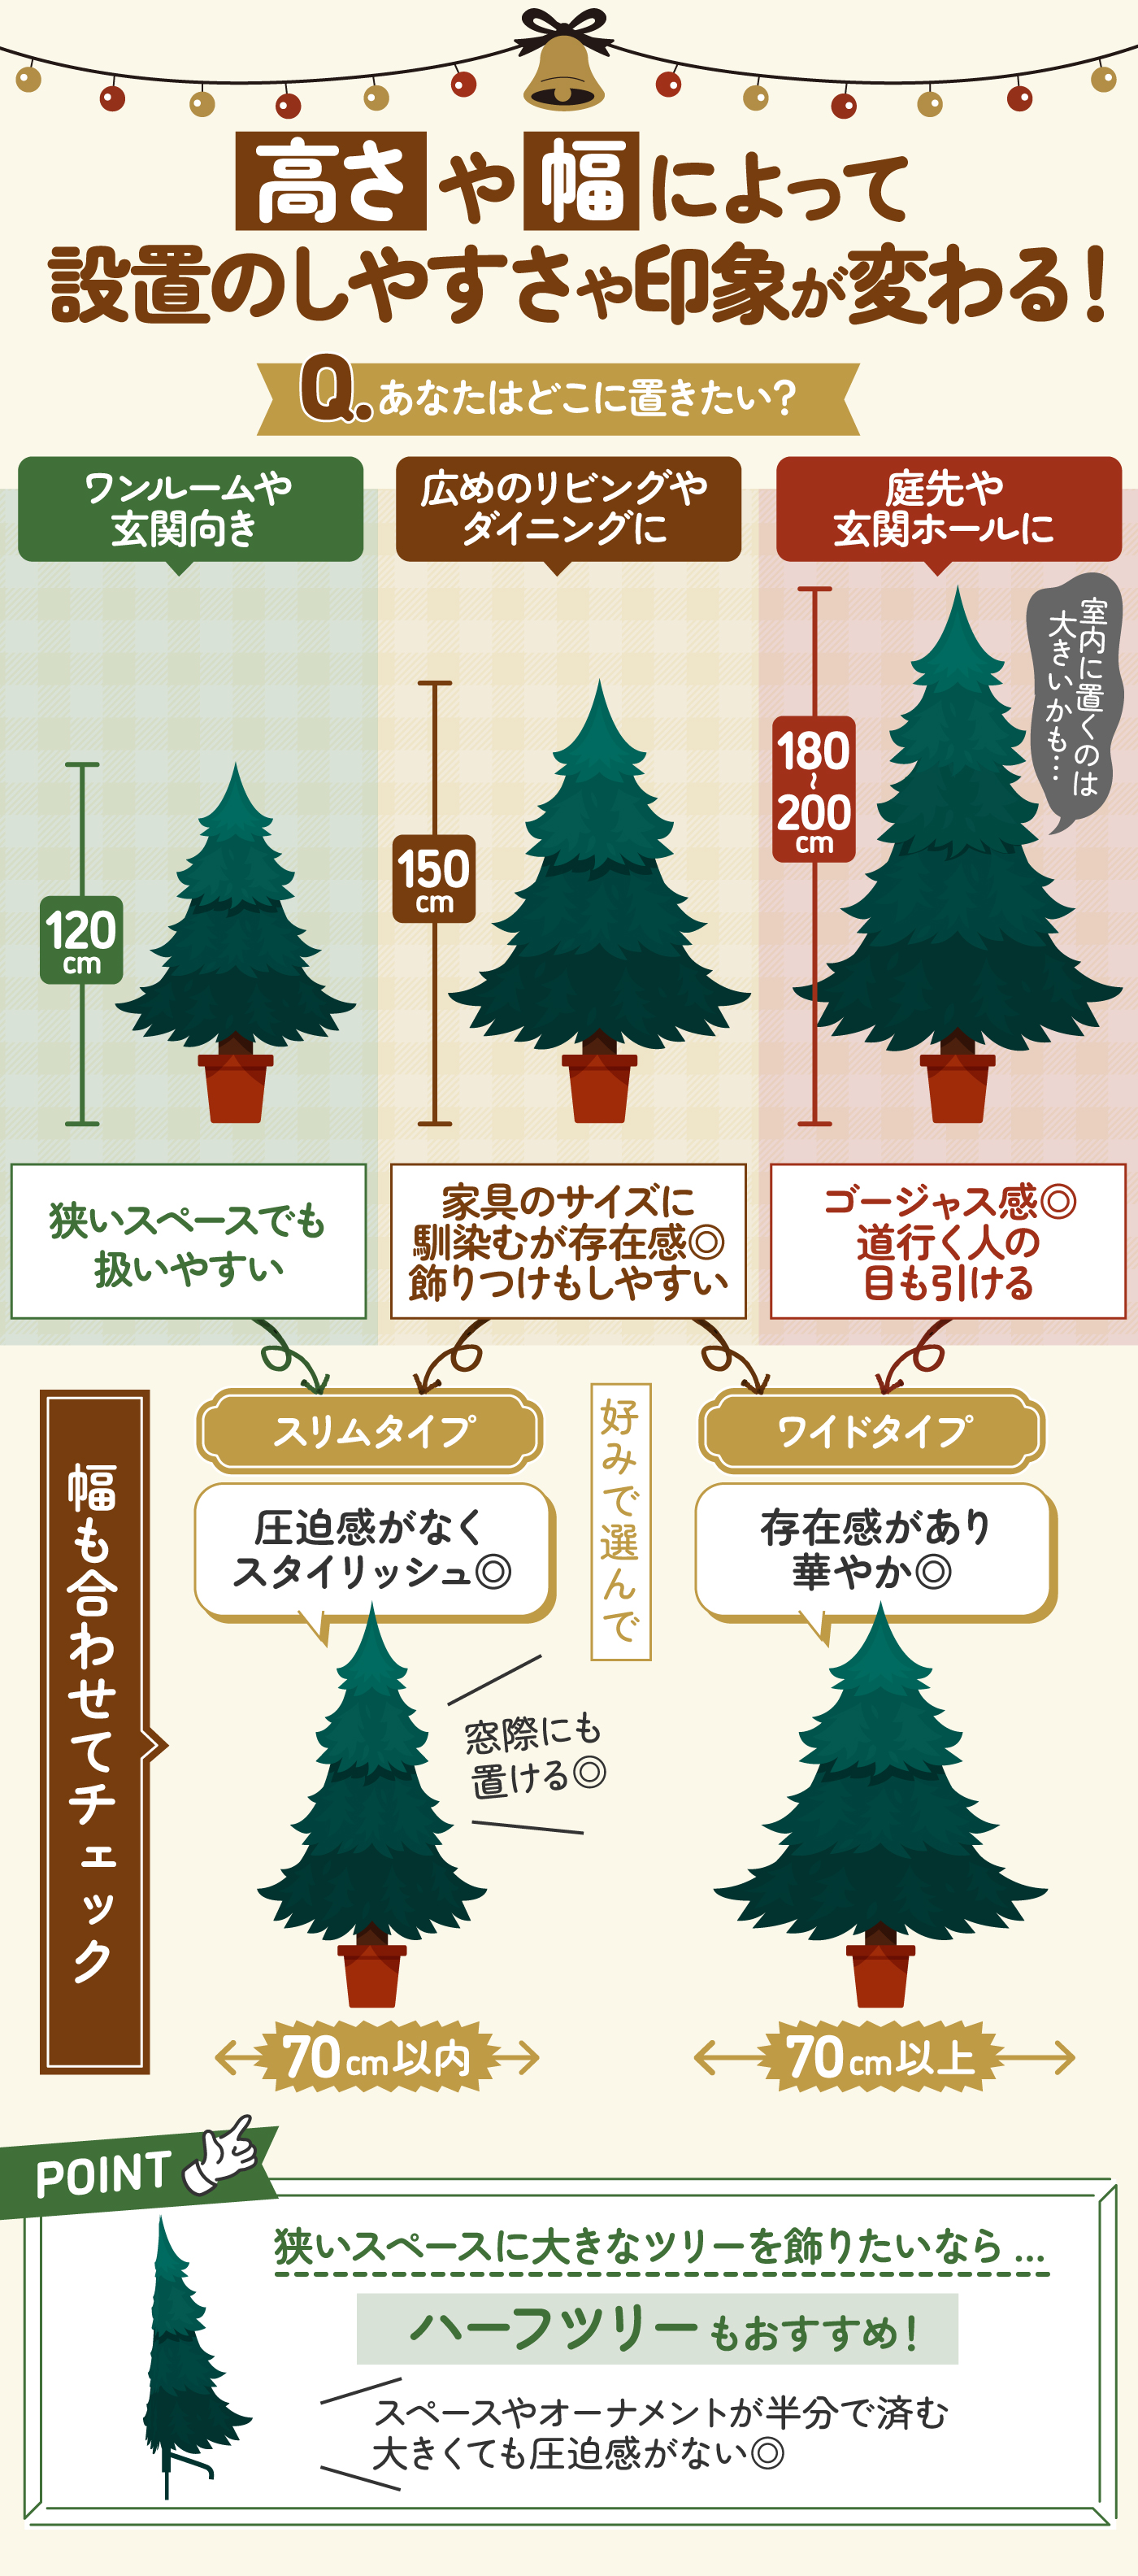 クリスマスツリー 枝大幅増量タイプ 赤い実付き、おしゃれなポリ成型葉混合クリスマスツリー 300CM KSBMA - 2